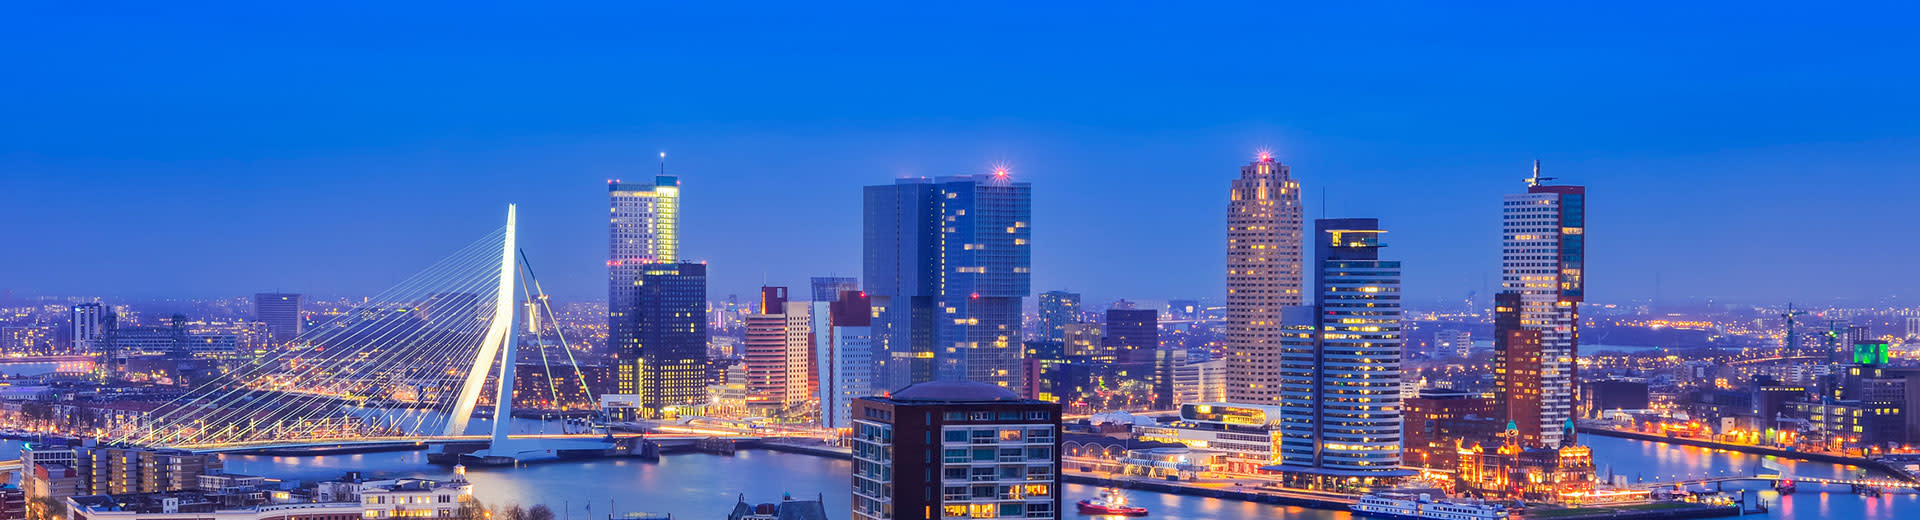 藍色の空を背景に、夕暮れの光に照らされたロッテルダムのスカイライン。